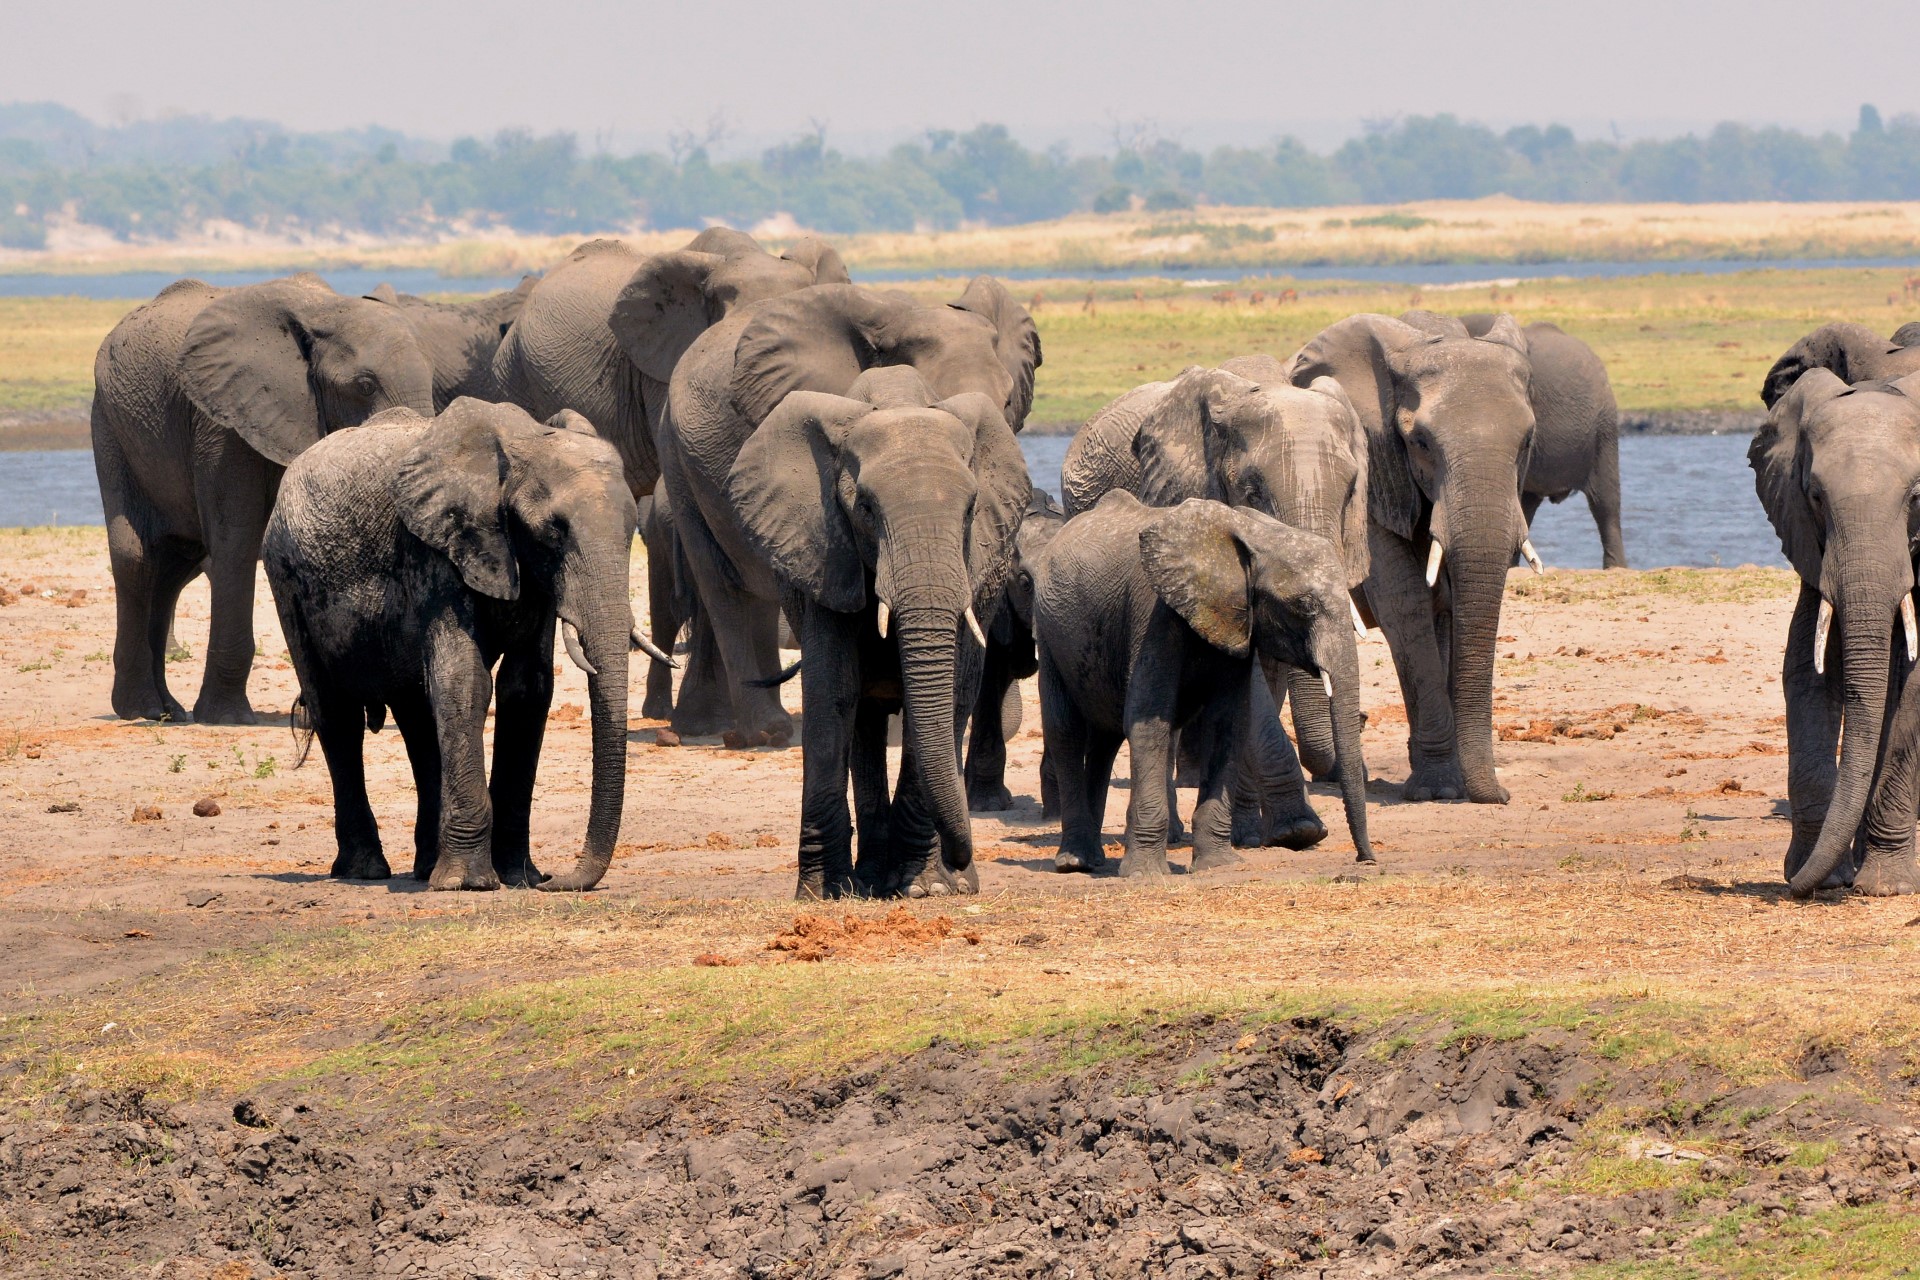 Manada de ‘elefantes salvajes’ causan revuelo en China